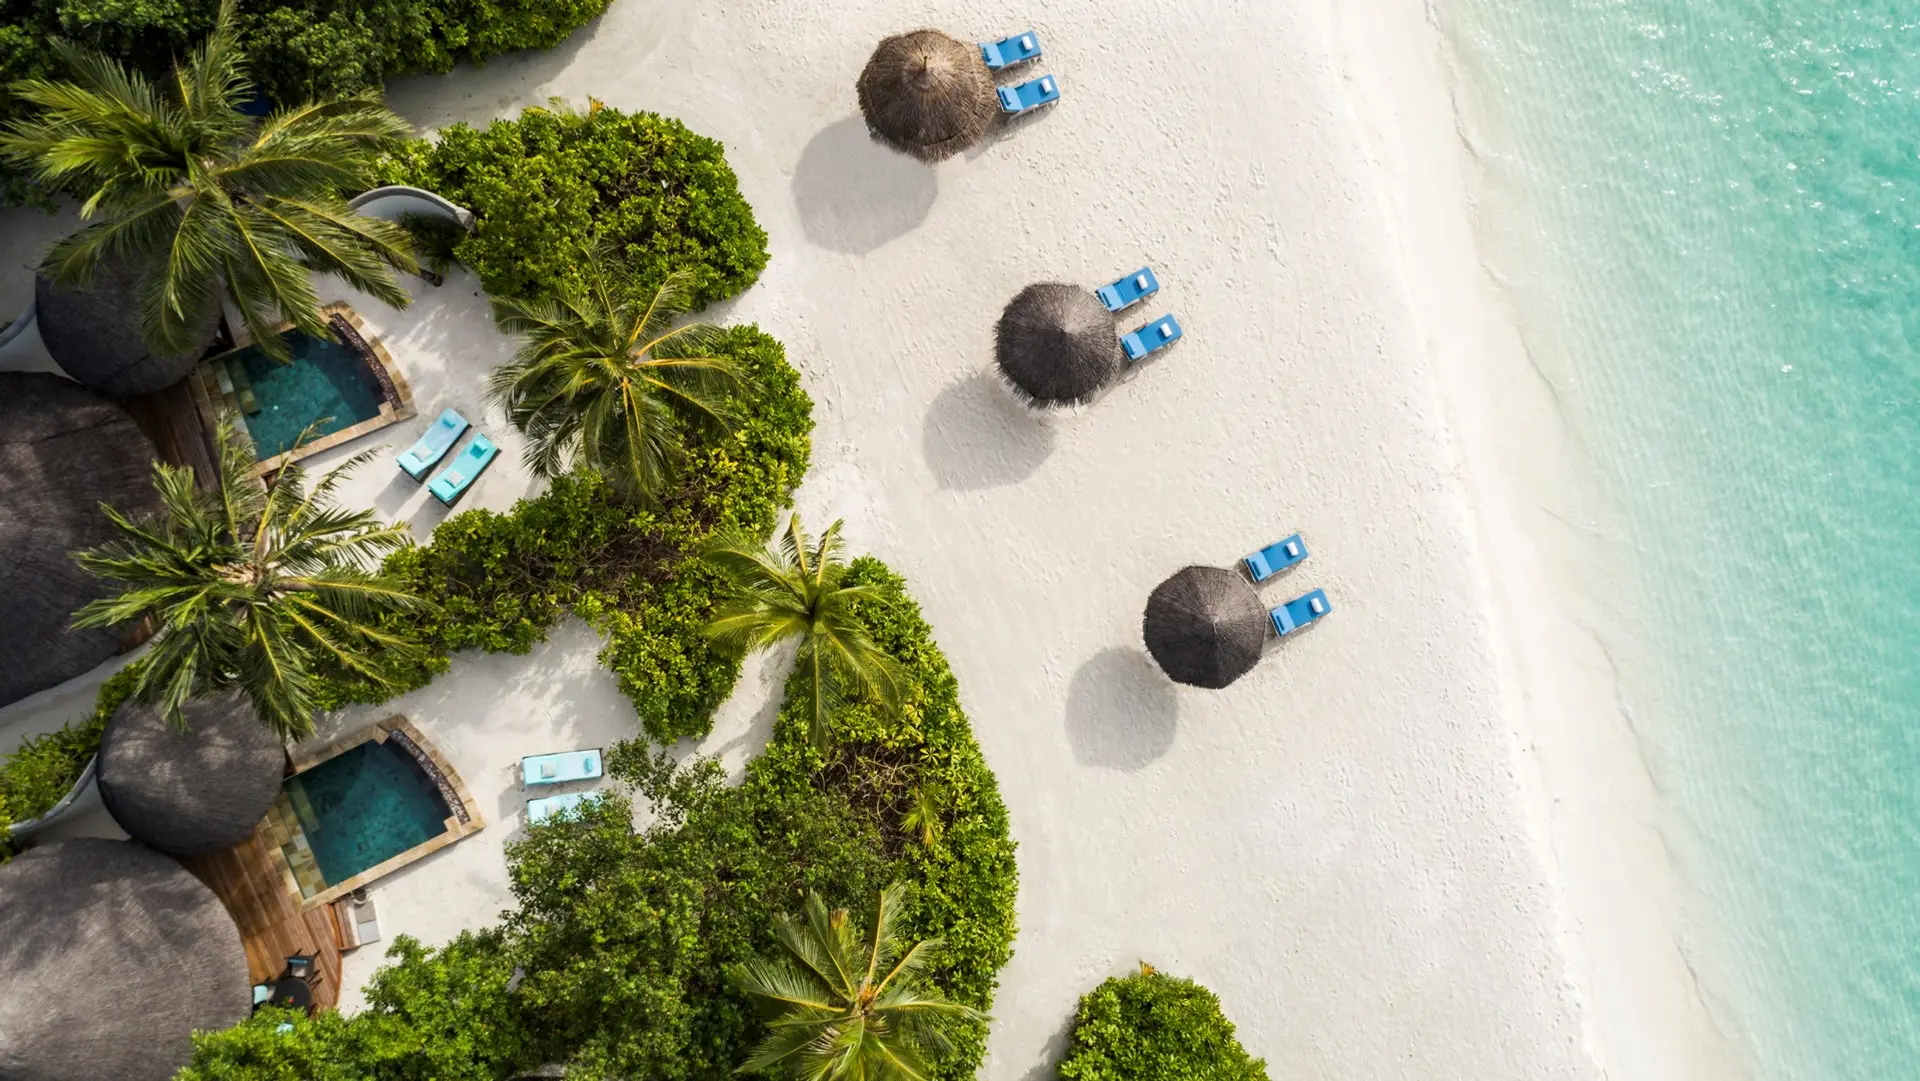 Hotel review Location' - Four Seasons Resort Maldives at Kuda Huraa - 3